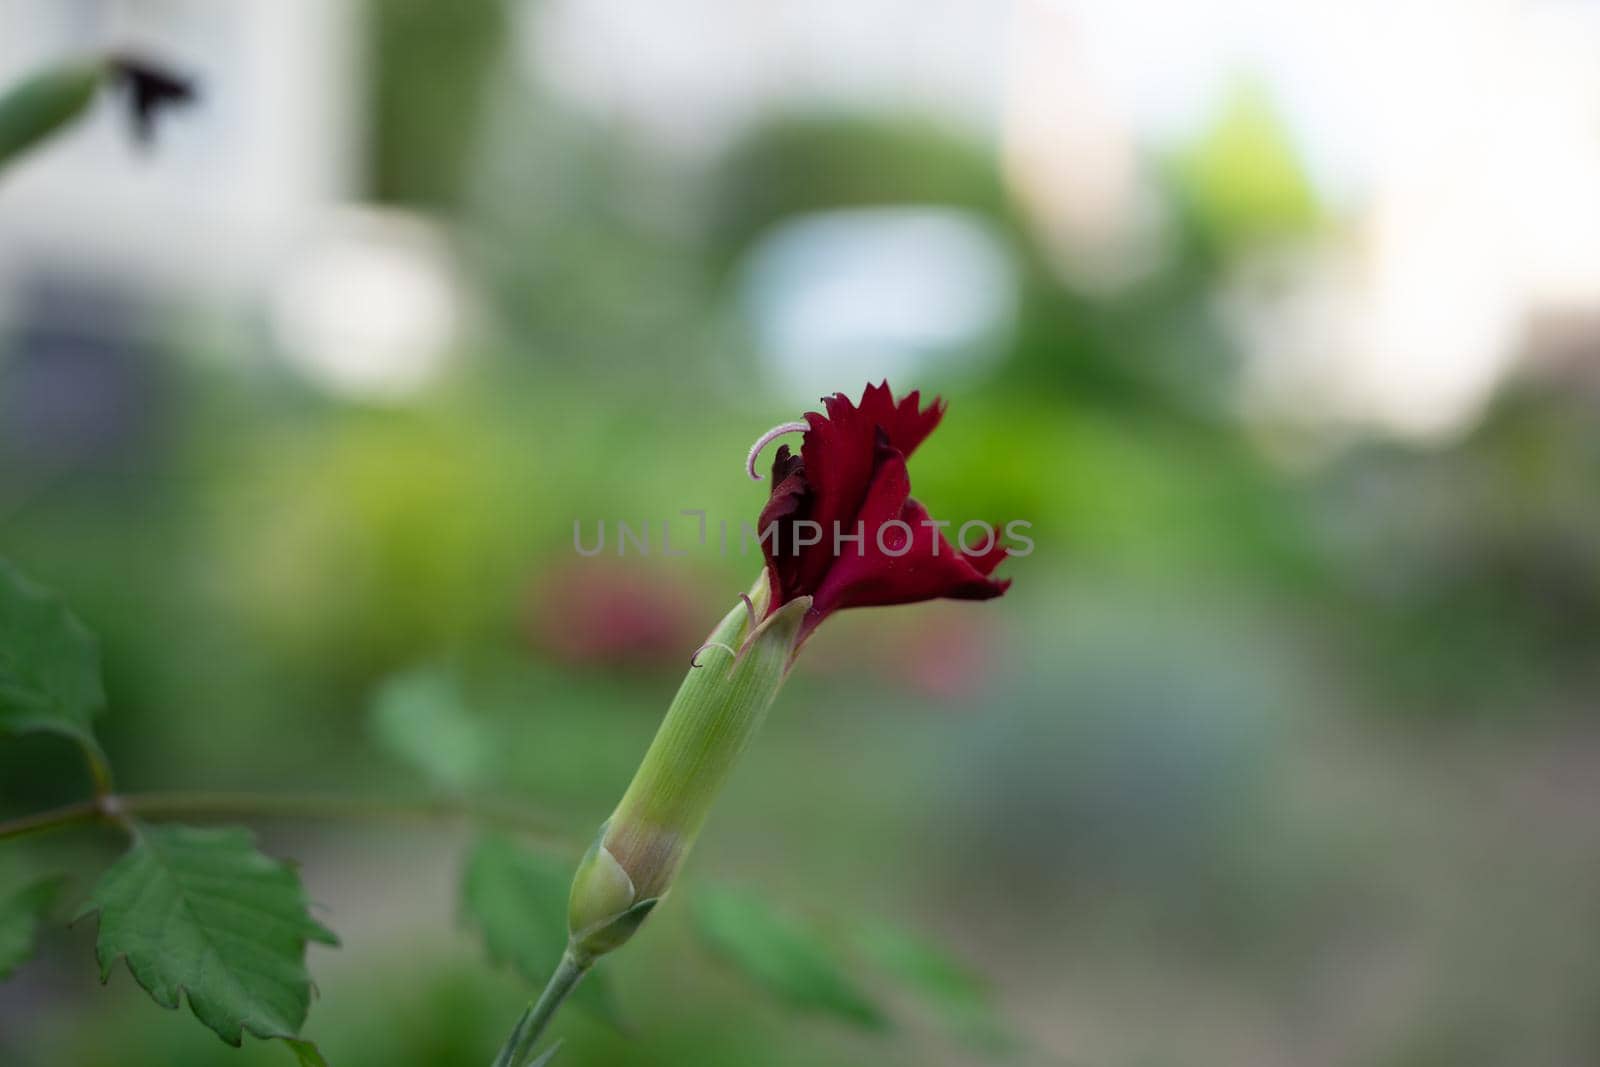 Unblown red flower bud on a beautiful blurred background. Soft focus by Serhii_Voroshchuk